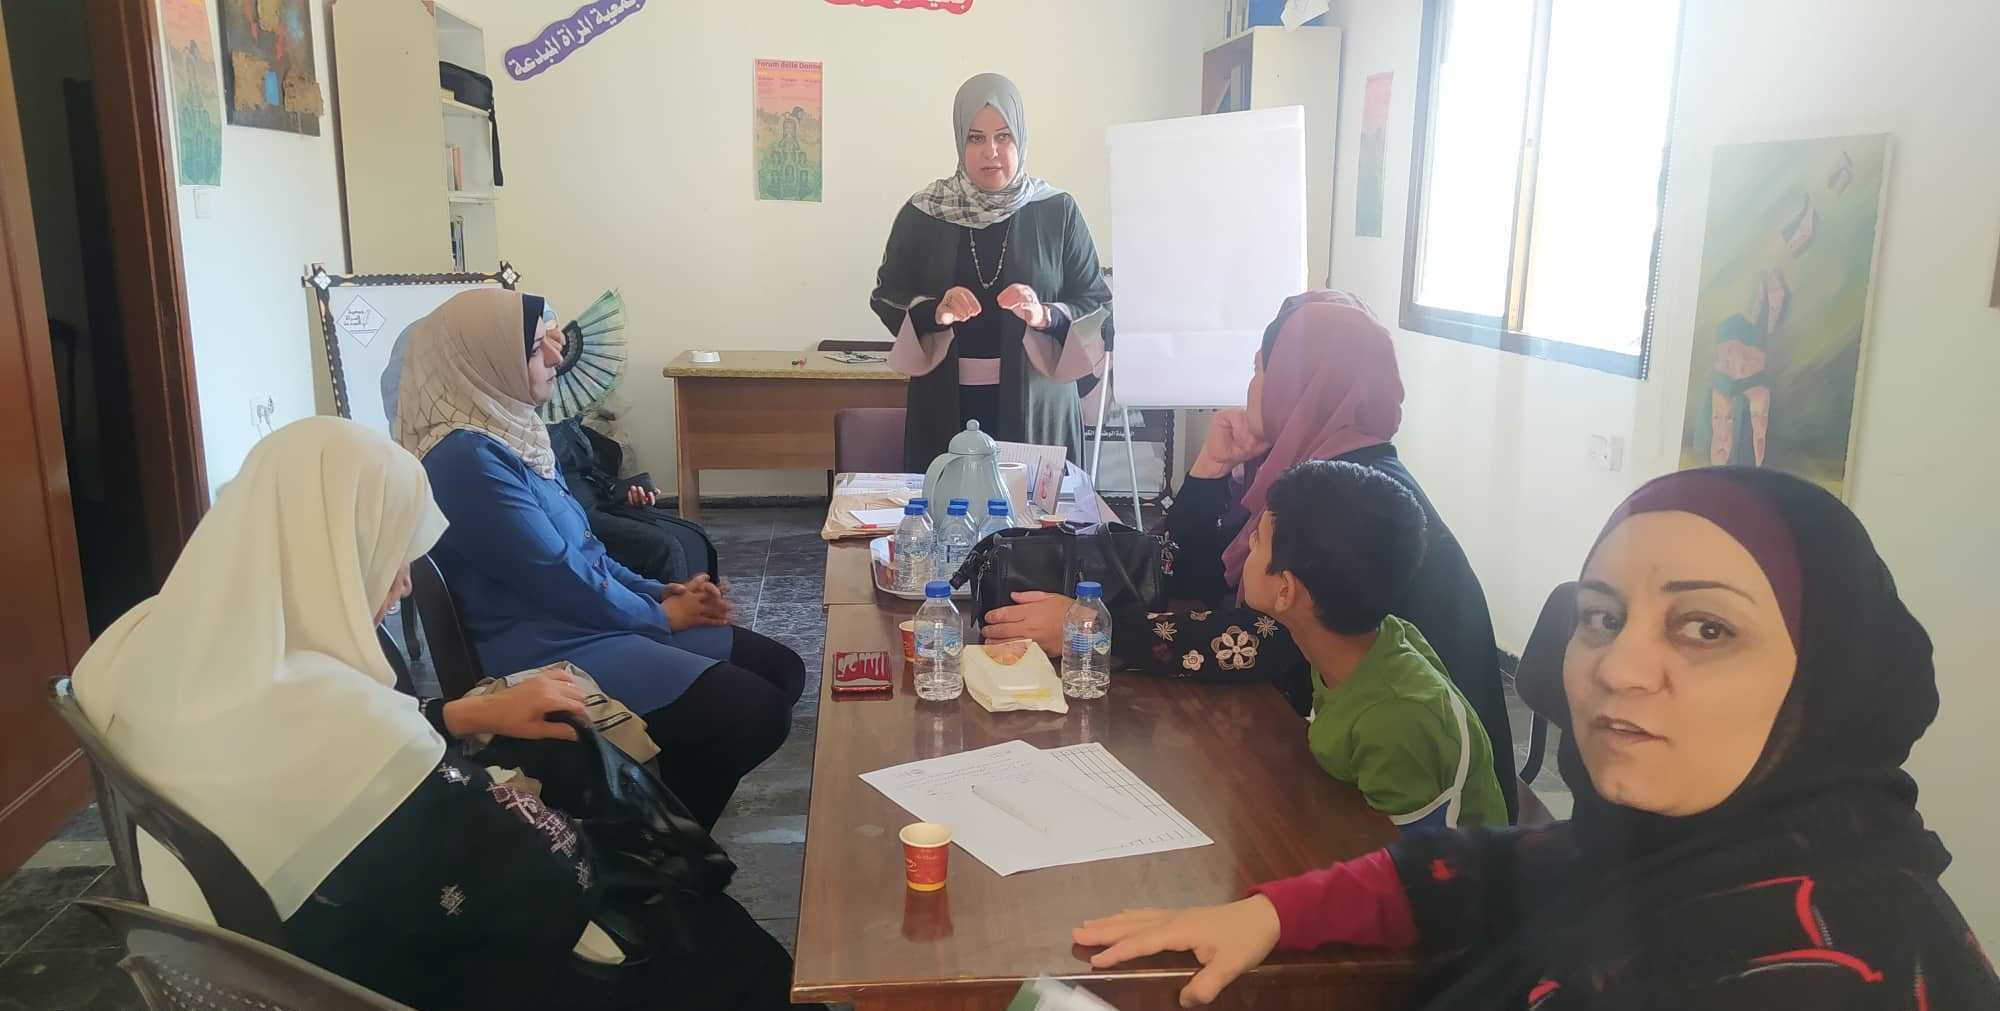 بالصور: جلسة حوارية تُسلط الضوء على واقع الصحة الإنجابية والجنسية للنساء في قطاع غزّة